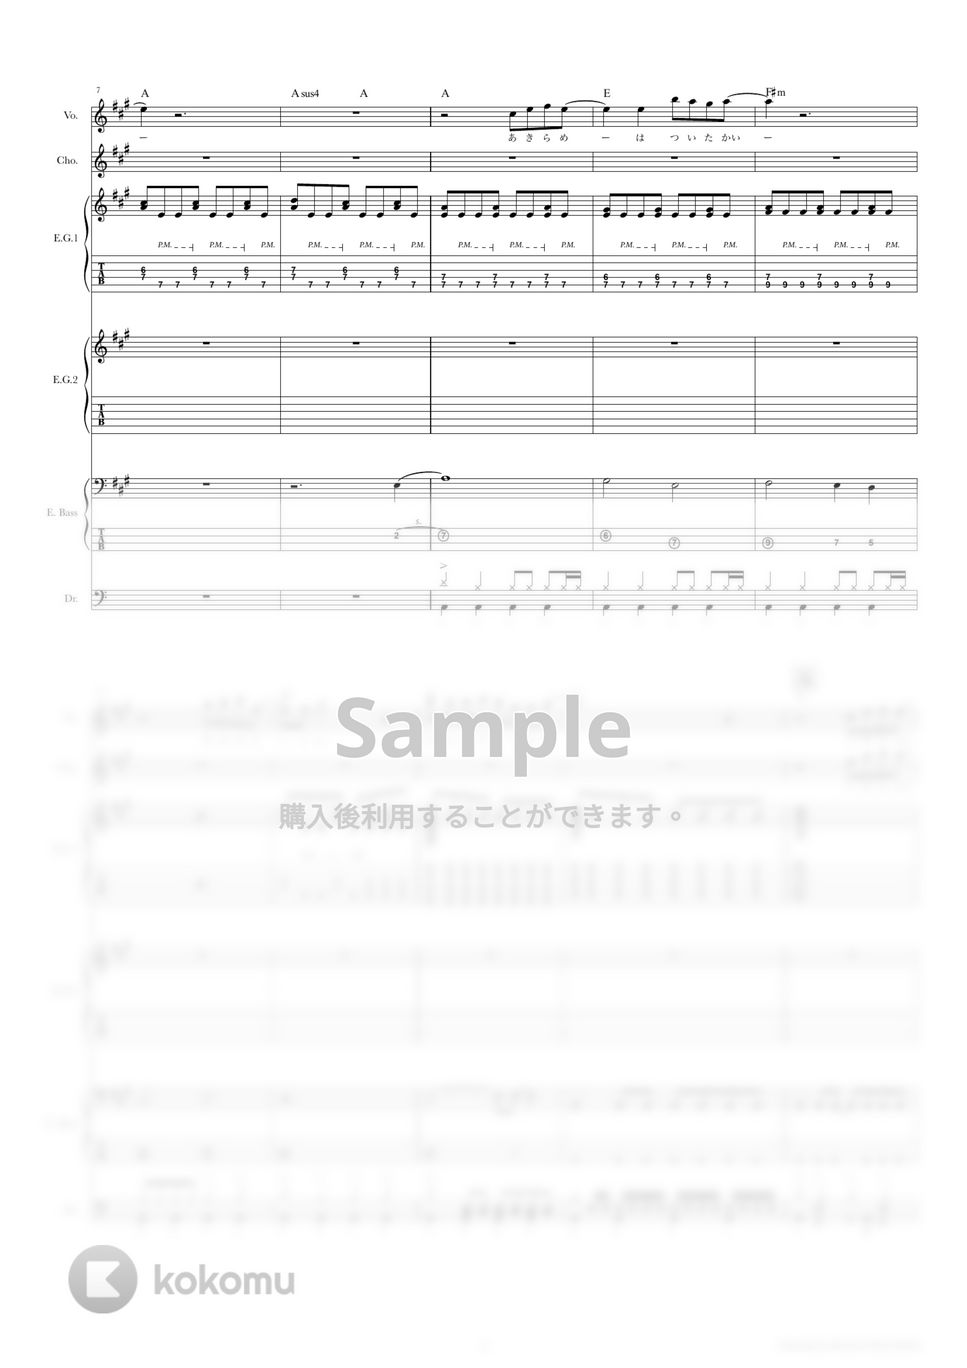 Hump Back - 拝啓、少年よ (バンドスコア) by TRIAD GUITAR SCHOOL